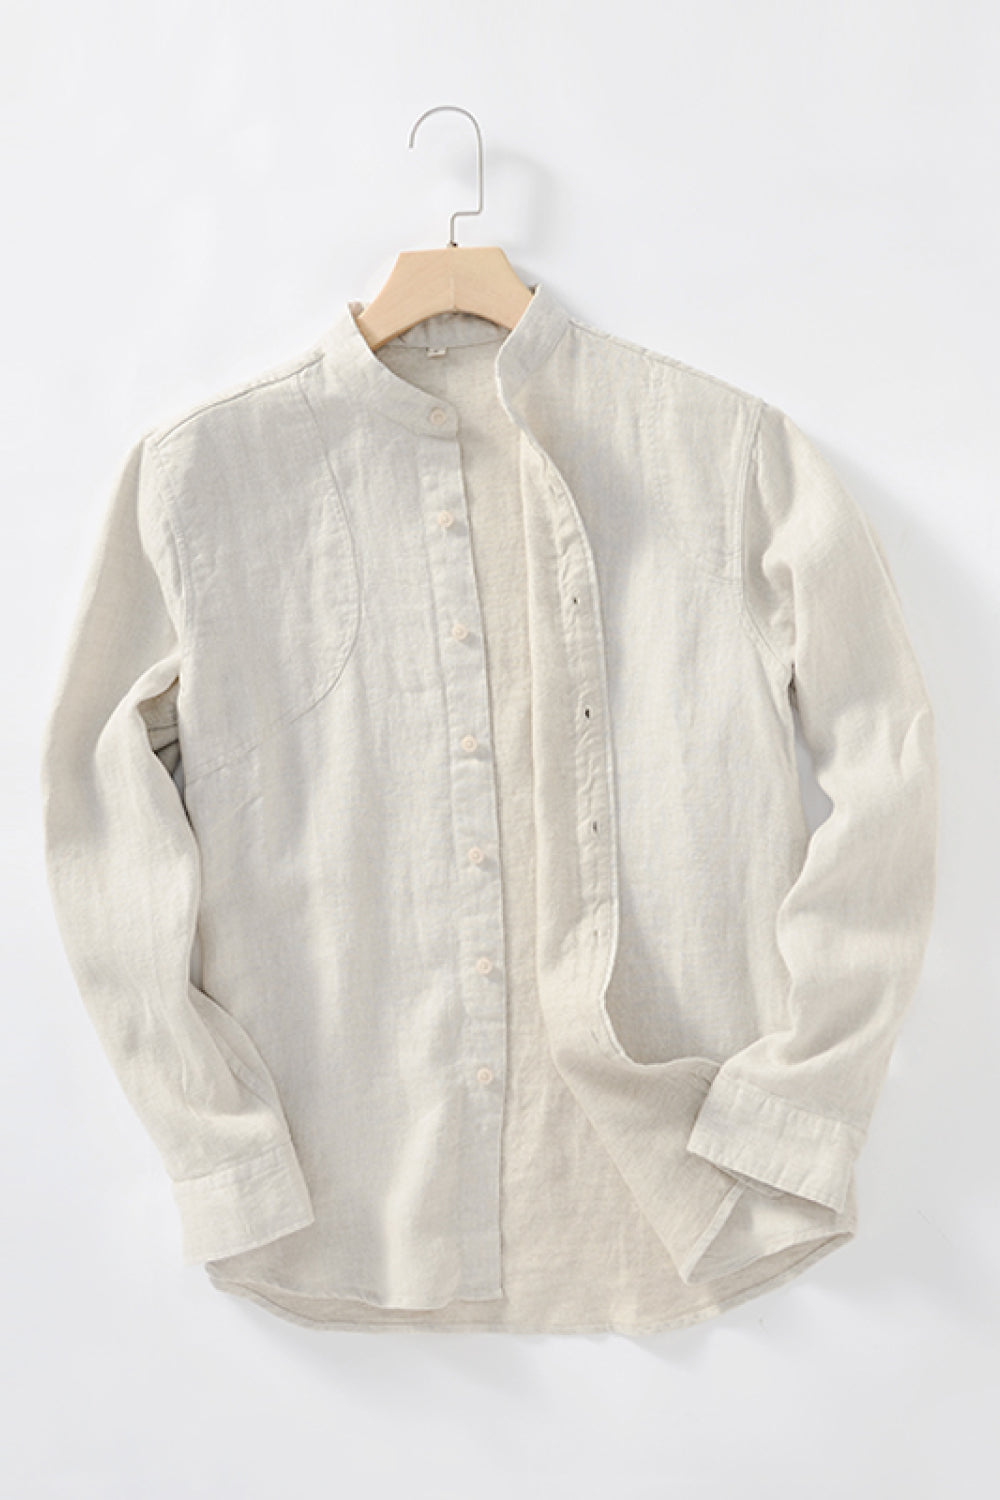 Buttoned Round Neck Long Sleeve Linen Shirt